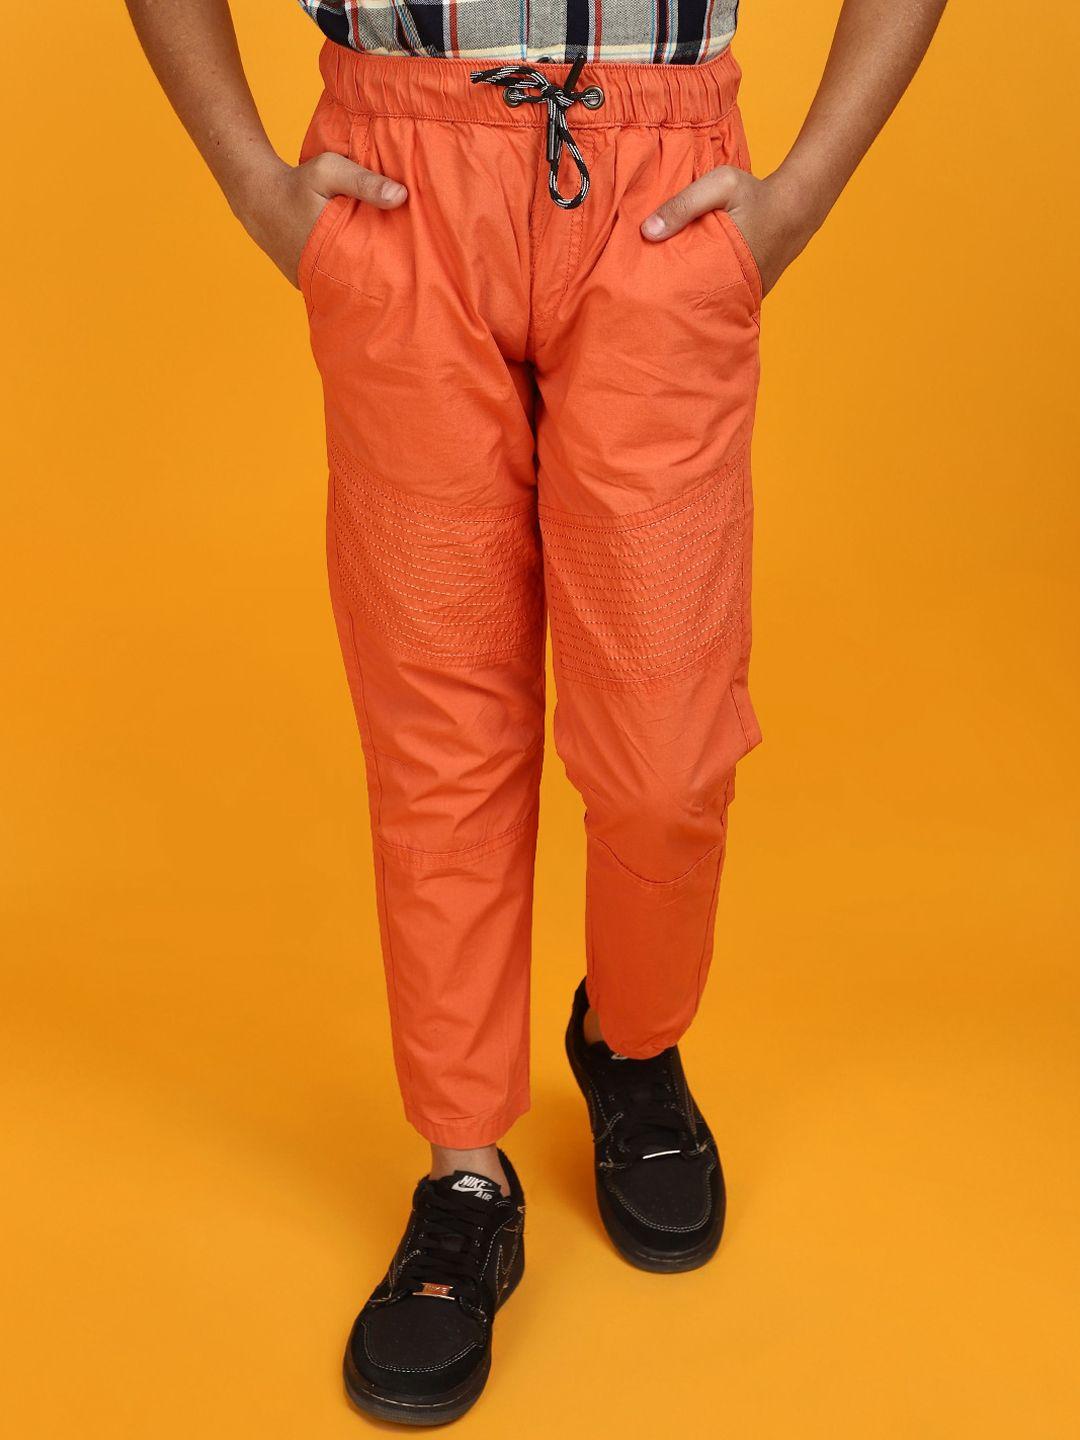 v-mart-boys-mid-rise-cotton-joggers-trouser